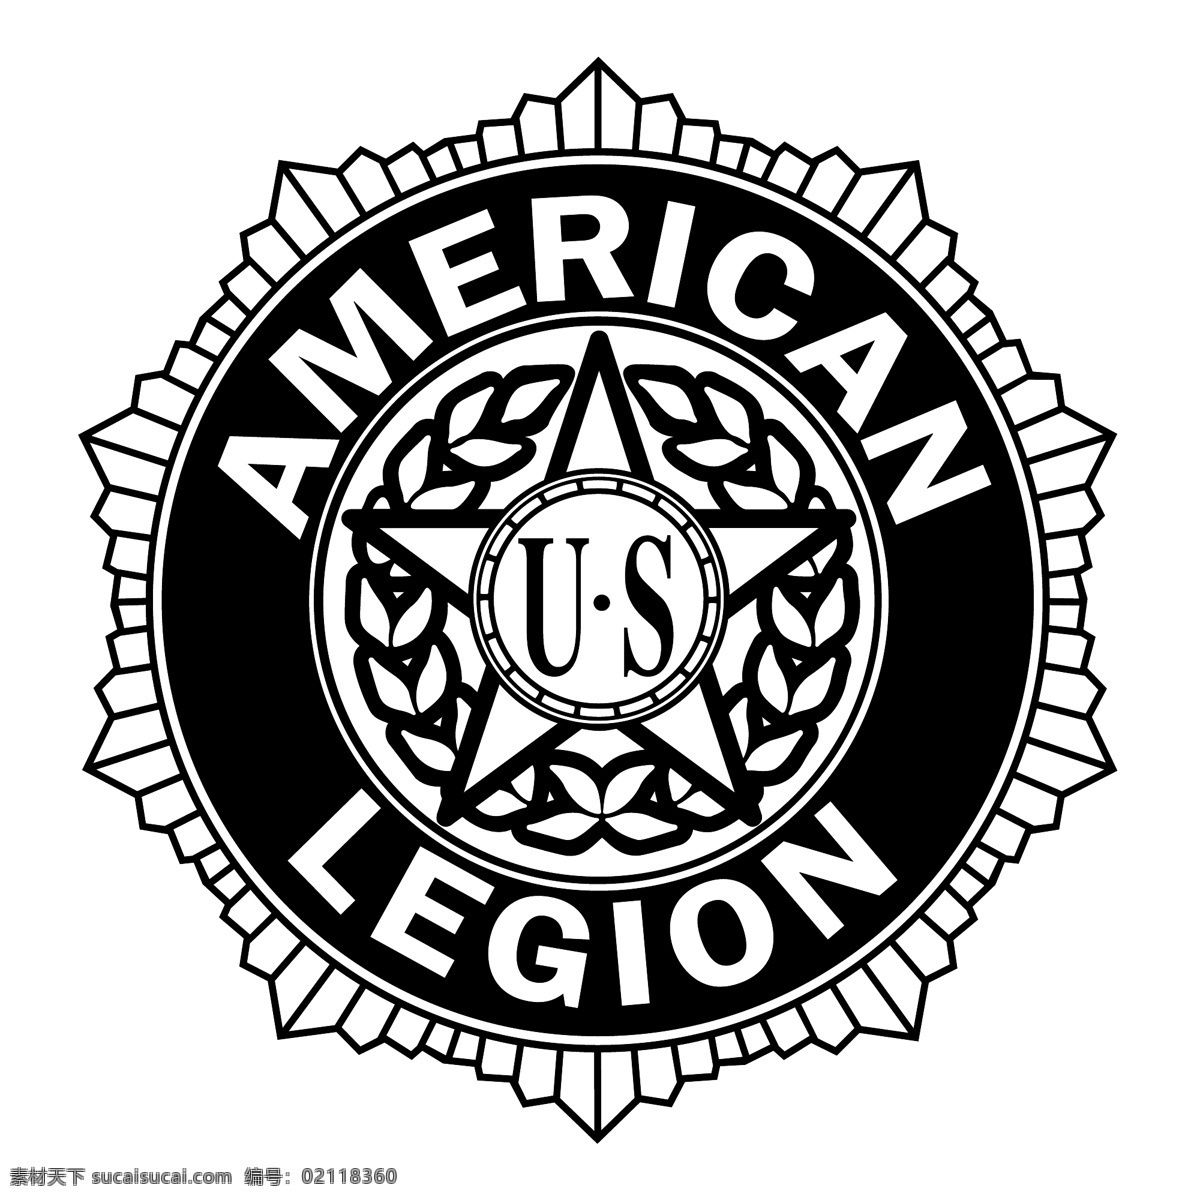 美国 退伍军人 协会 免费 军团 标志 标识 psd源文件 logo设计